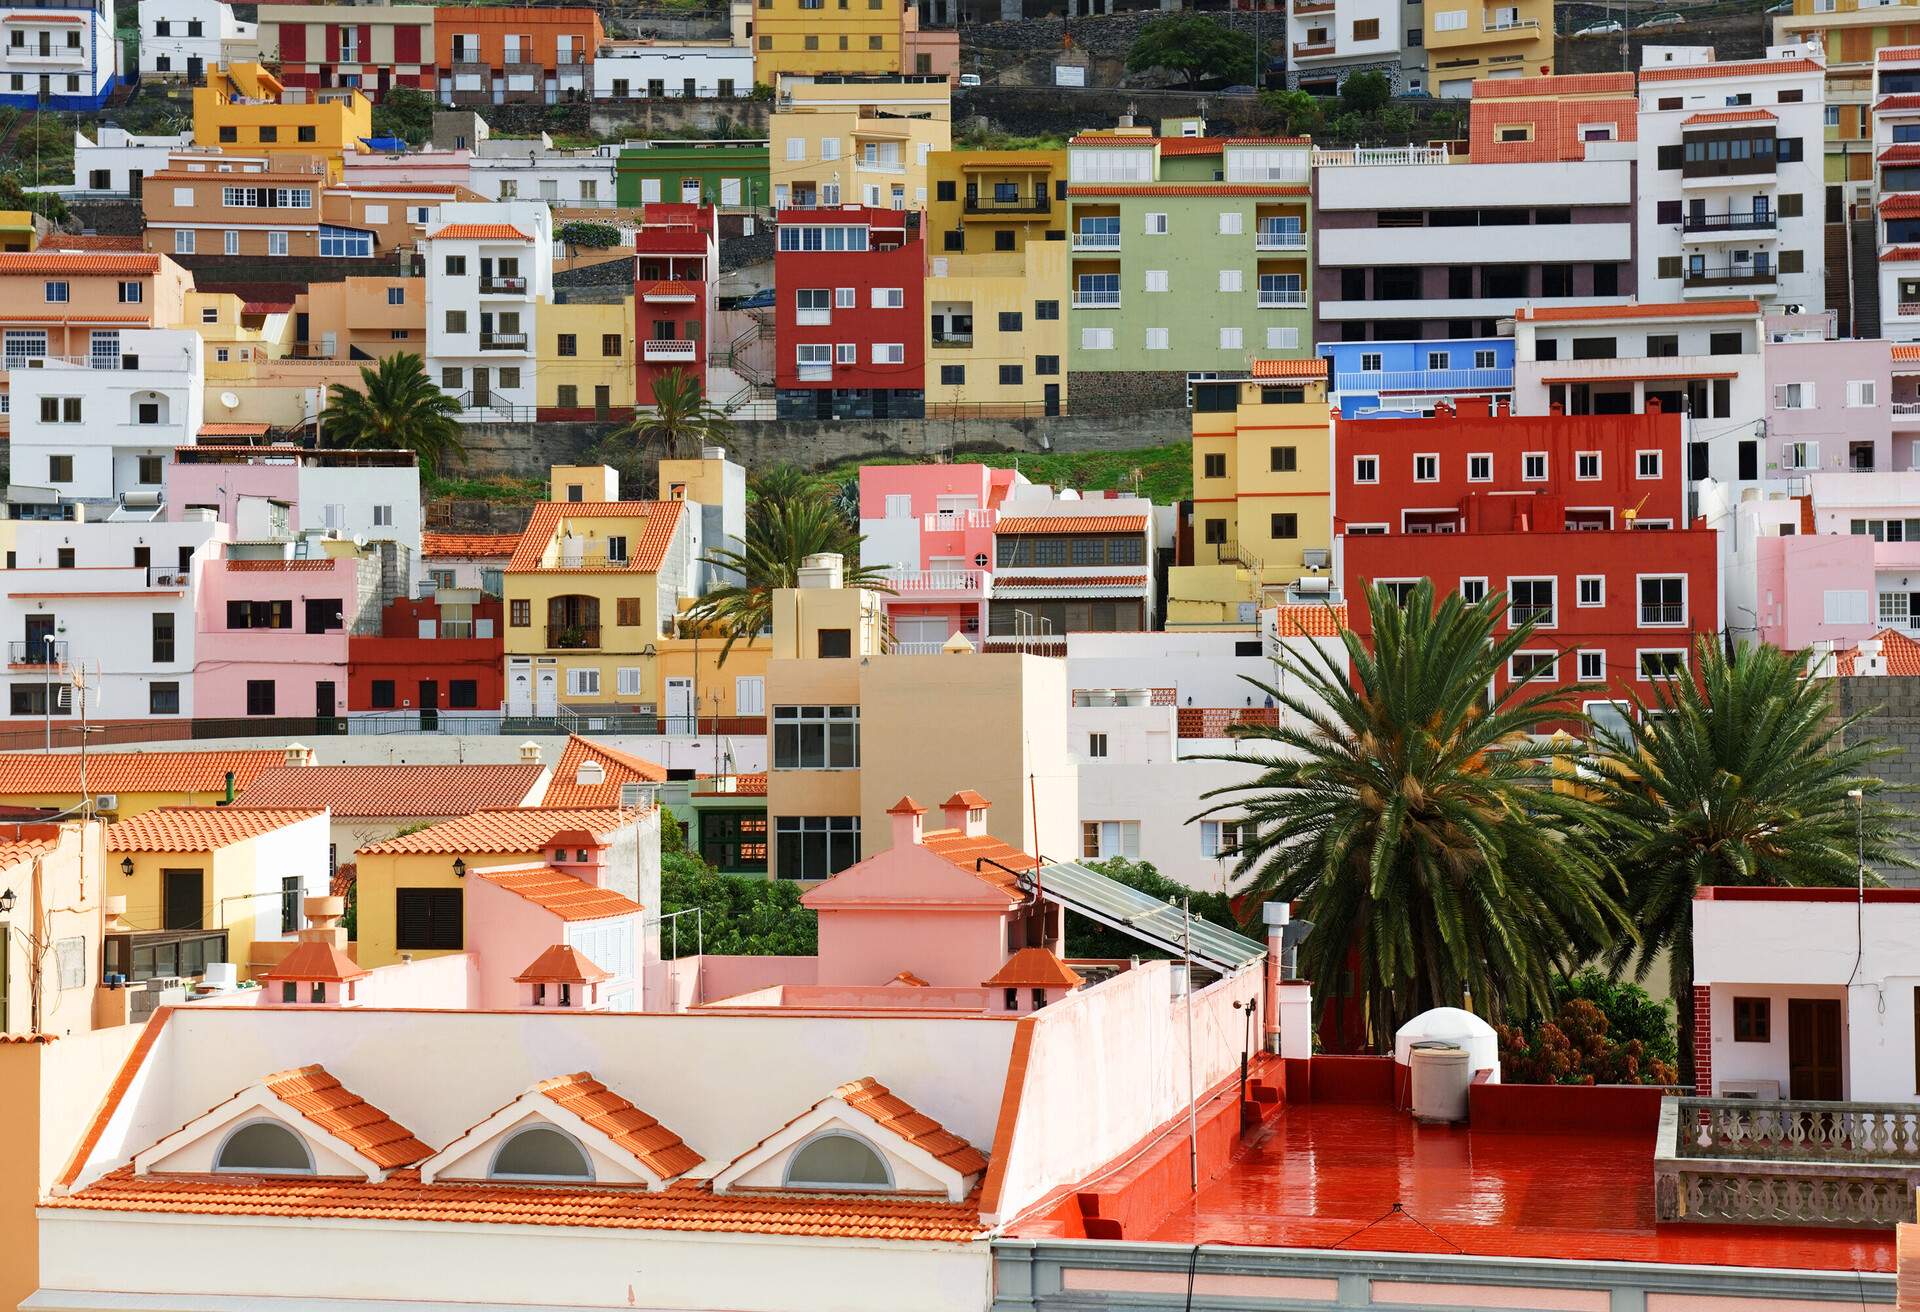 San Sebastian de la Gomera, Canary Islands, Spain; Shutterstock ID 233916229